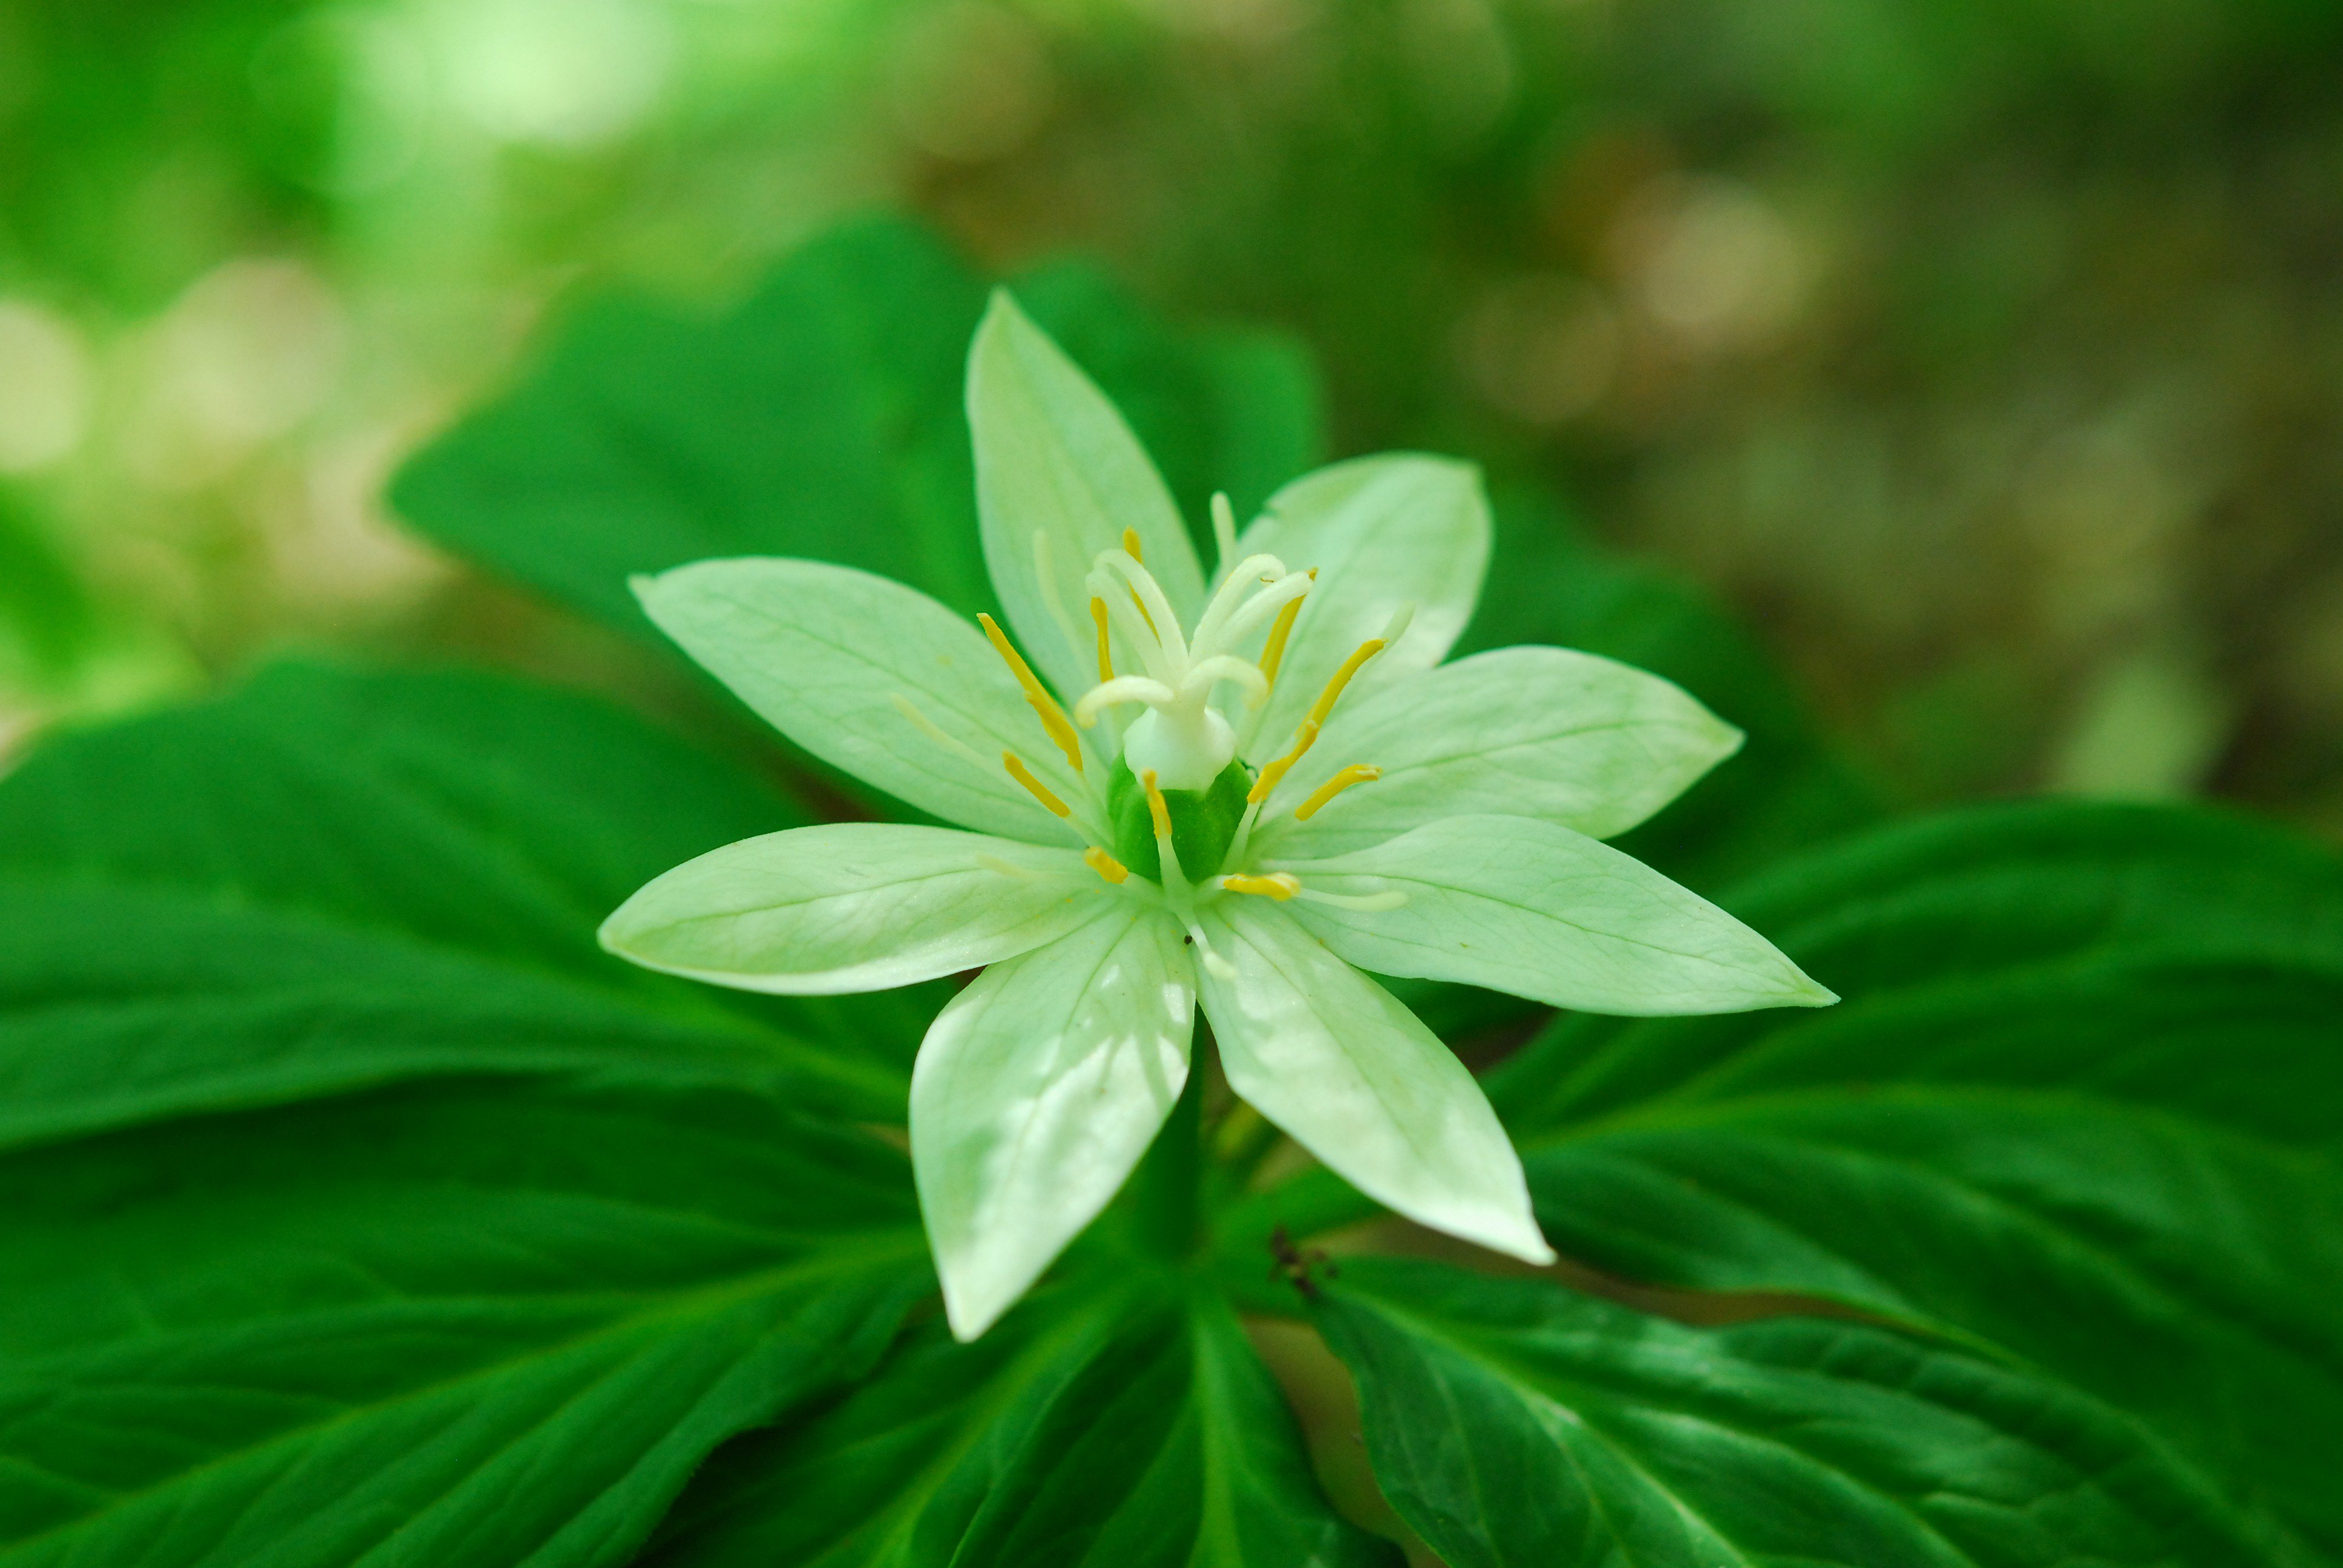 六甲高山植物園 キヌガサソウ の花が咲いています 一属一種 日本にしかない日本固有種 亜高山帯から高山帯の湿った草地や林床に生える多年草です 圧倒的な美しさだなぁ 1株だけ咲いています お目当ての方はお早めにどうぞ T Co